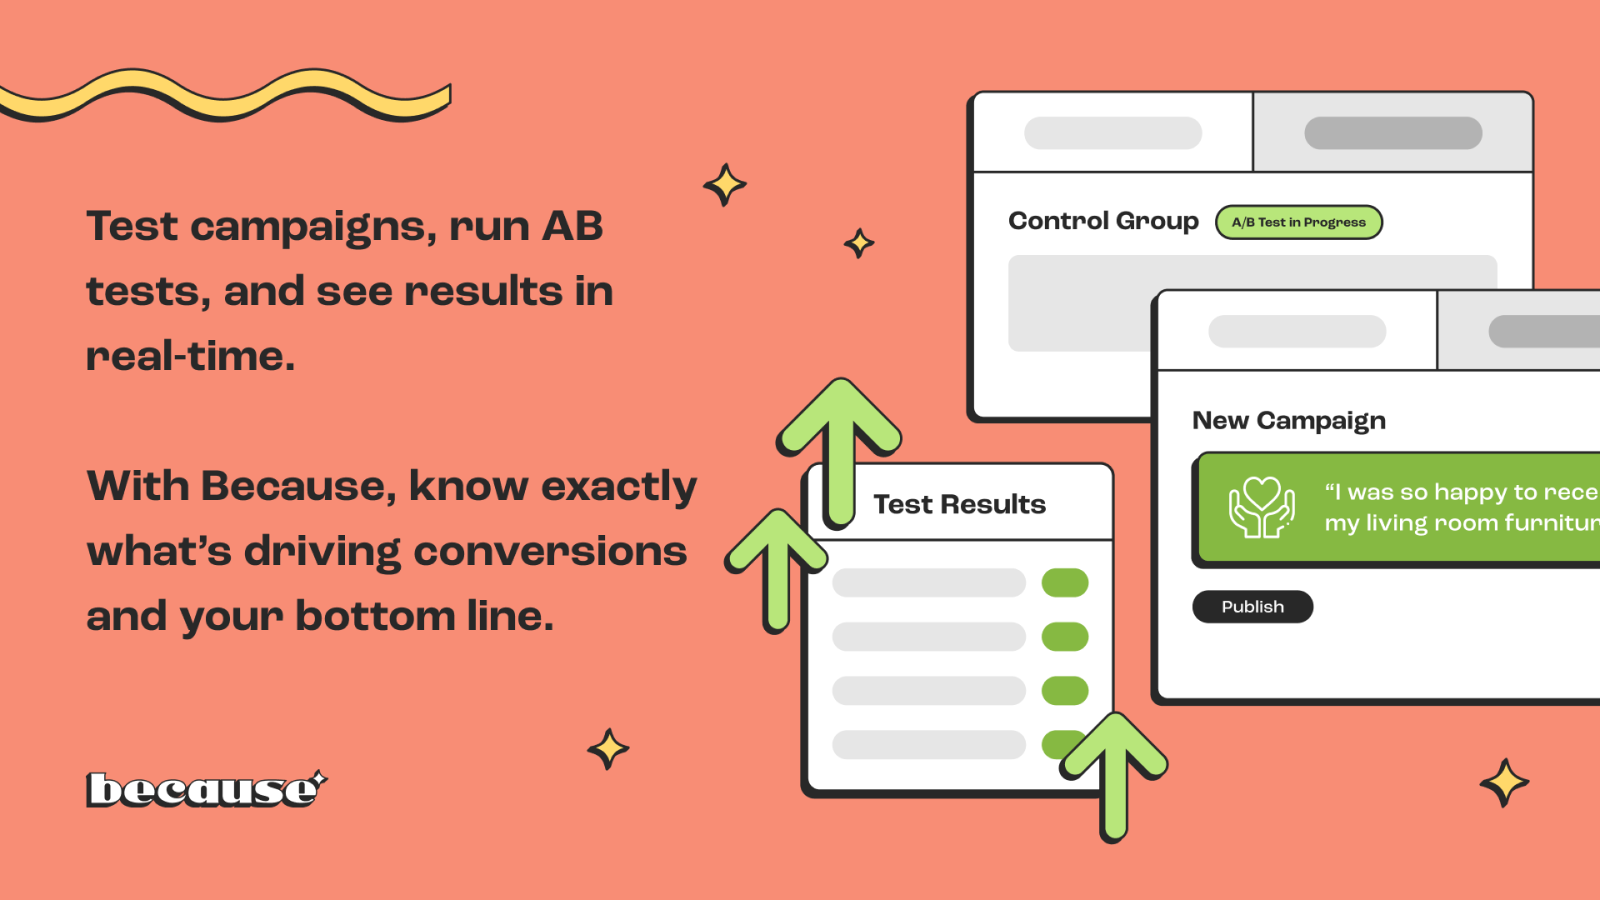 Testez des campagnes, effectuez des tests A/B et voyez les résultats en temps réel